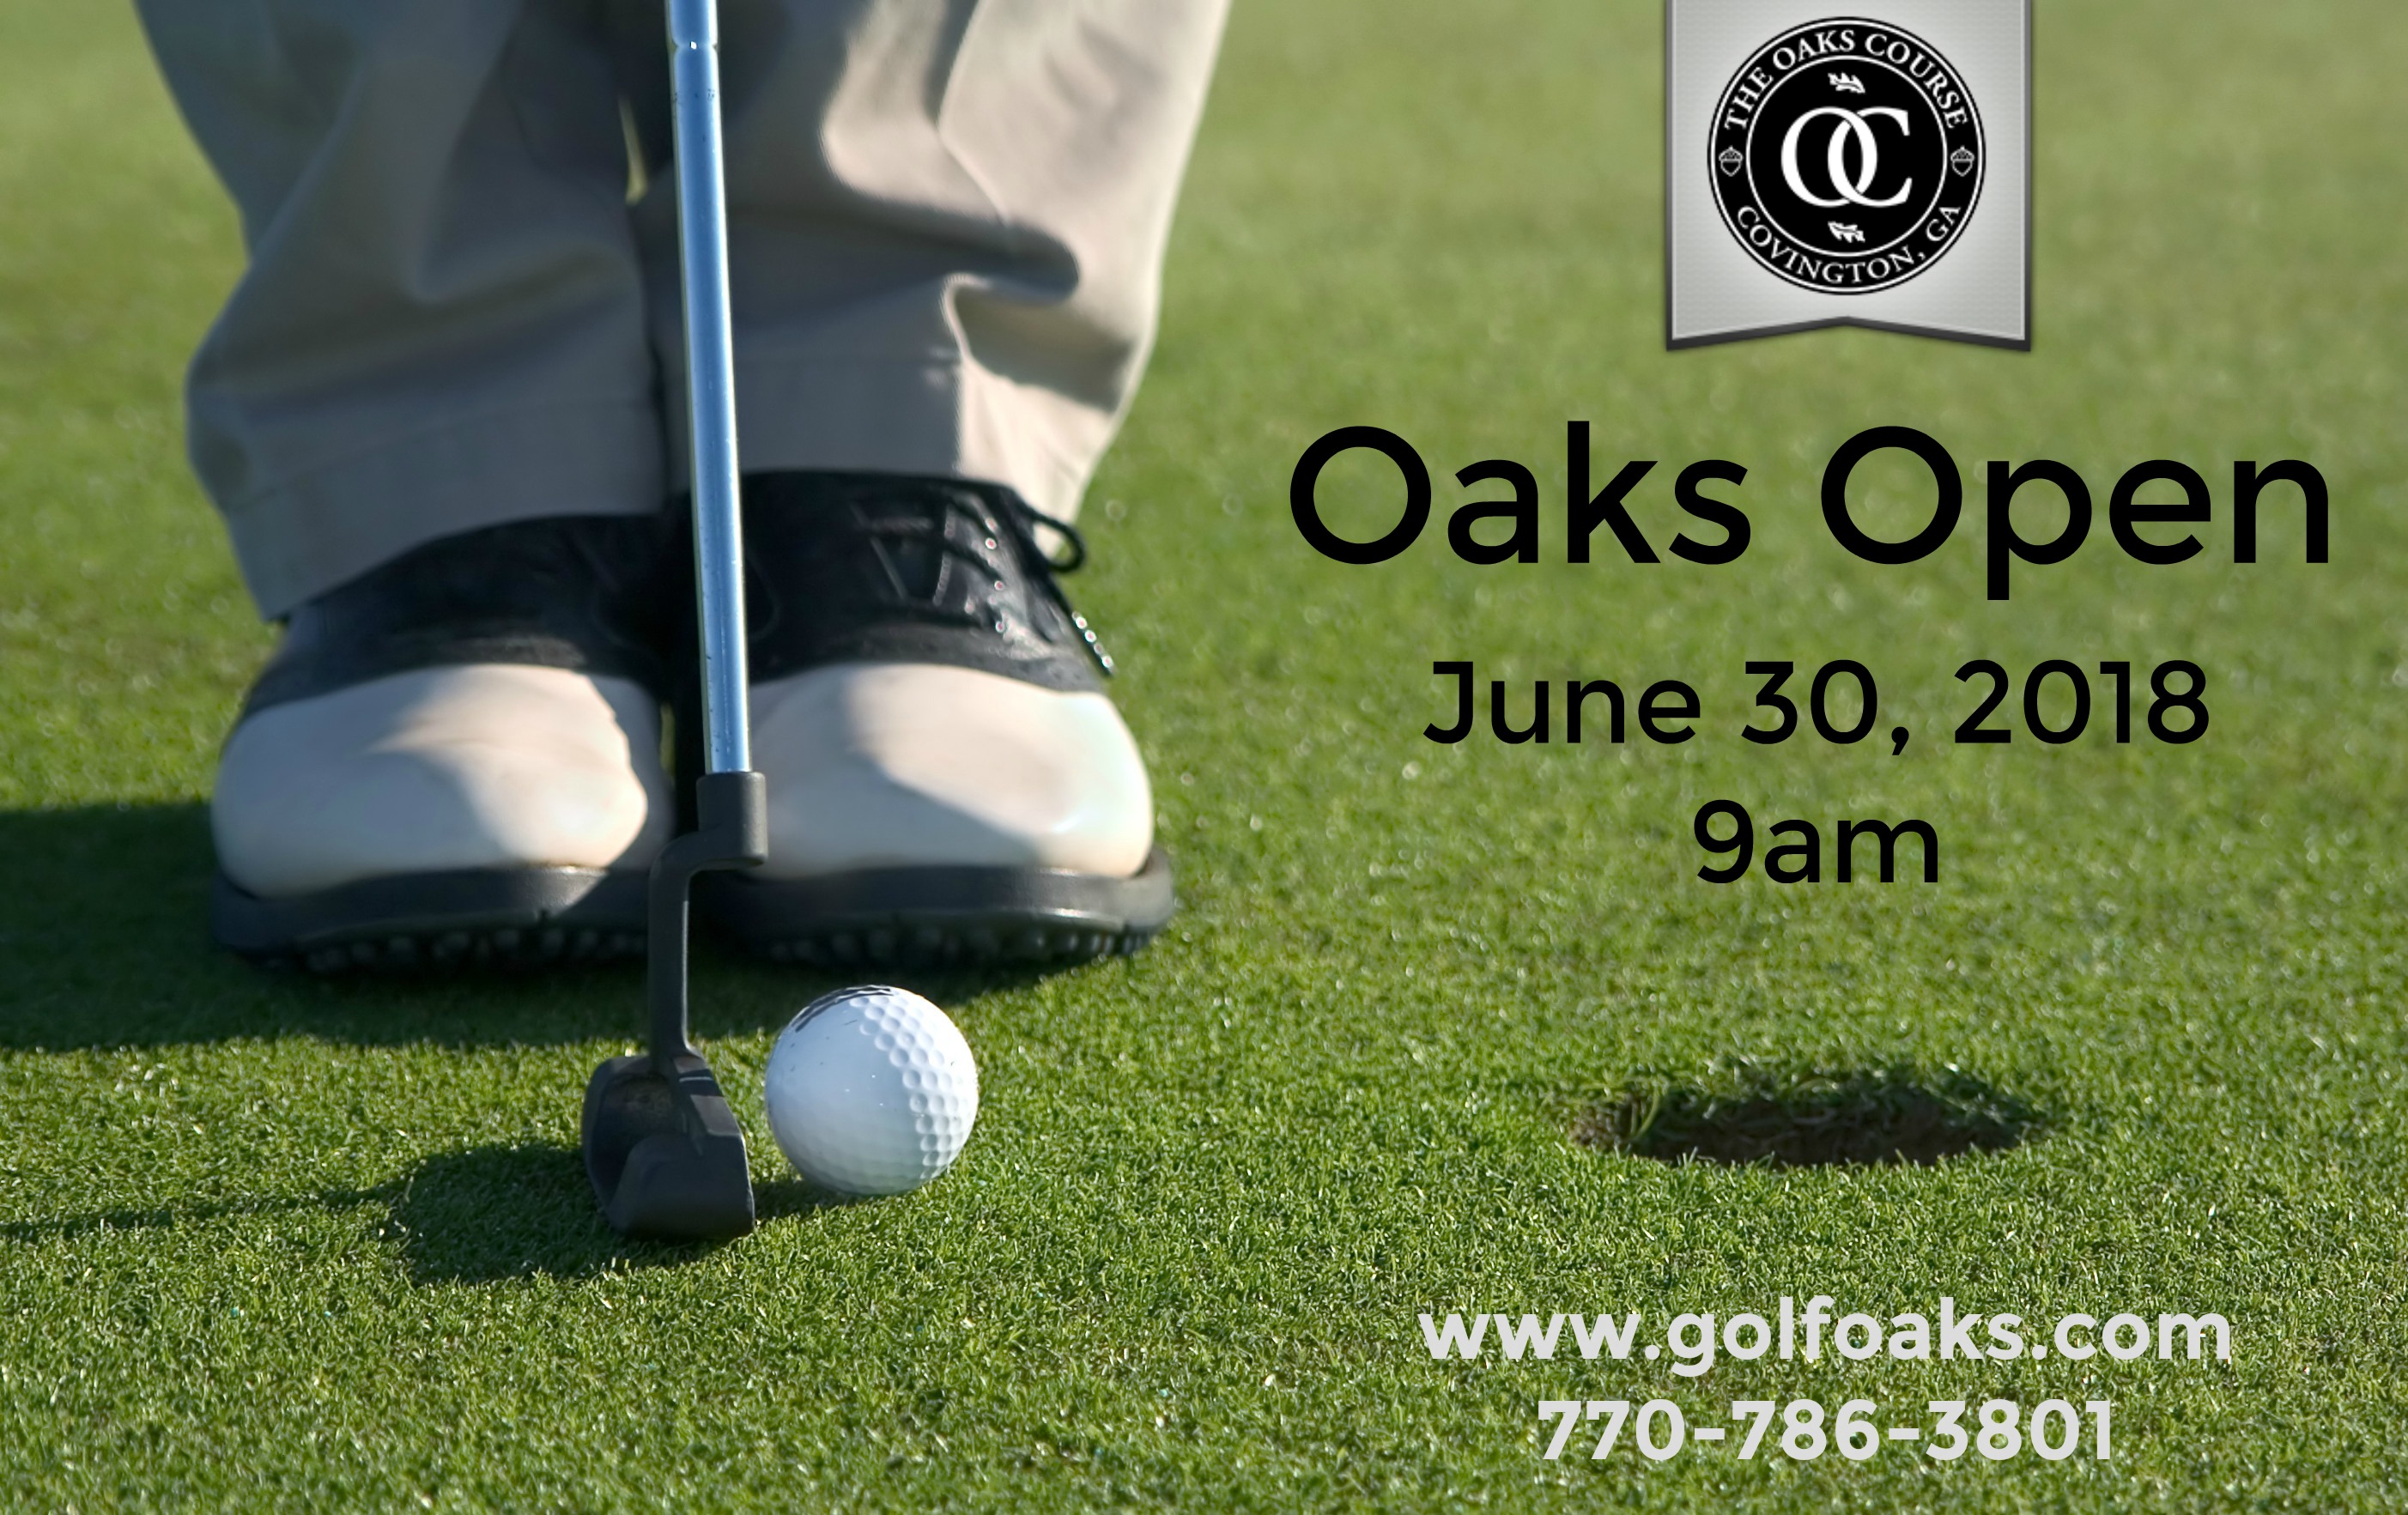 Oaks Open 2018